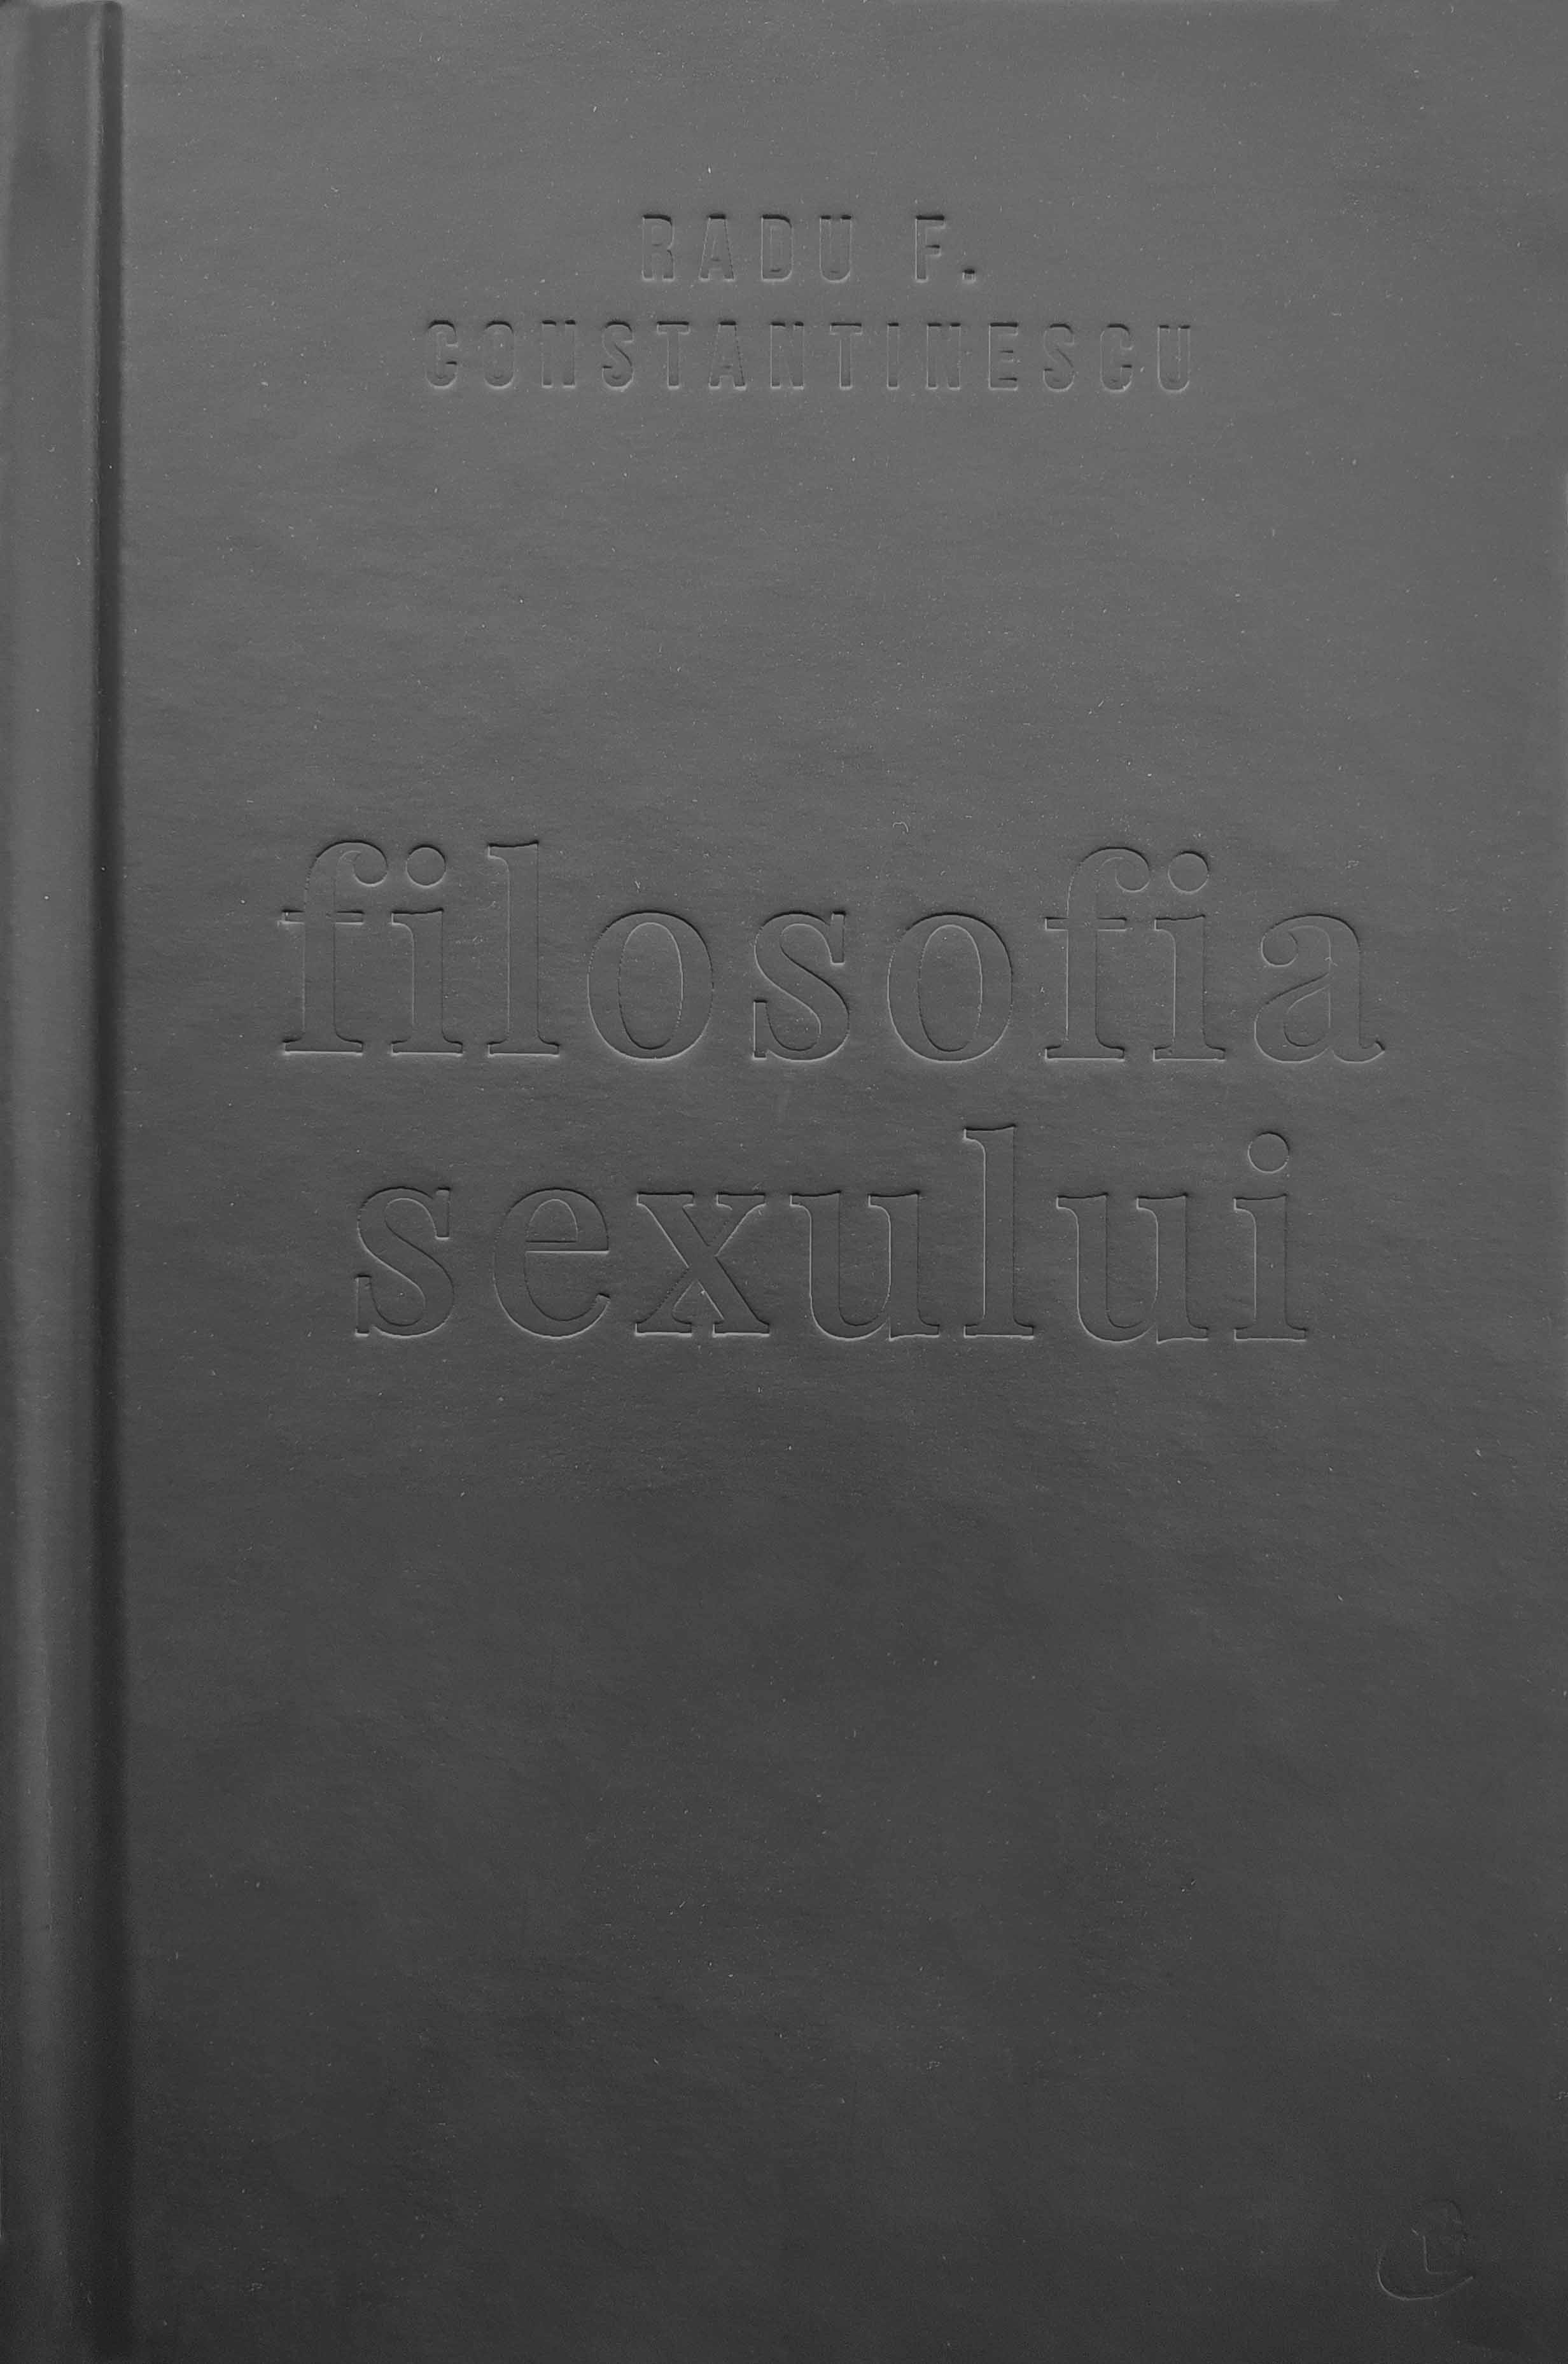 Filosofia sexului. Editie necenzurata - Radu F. Constantinescu